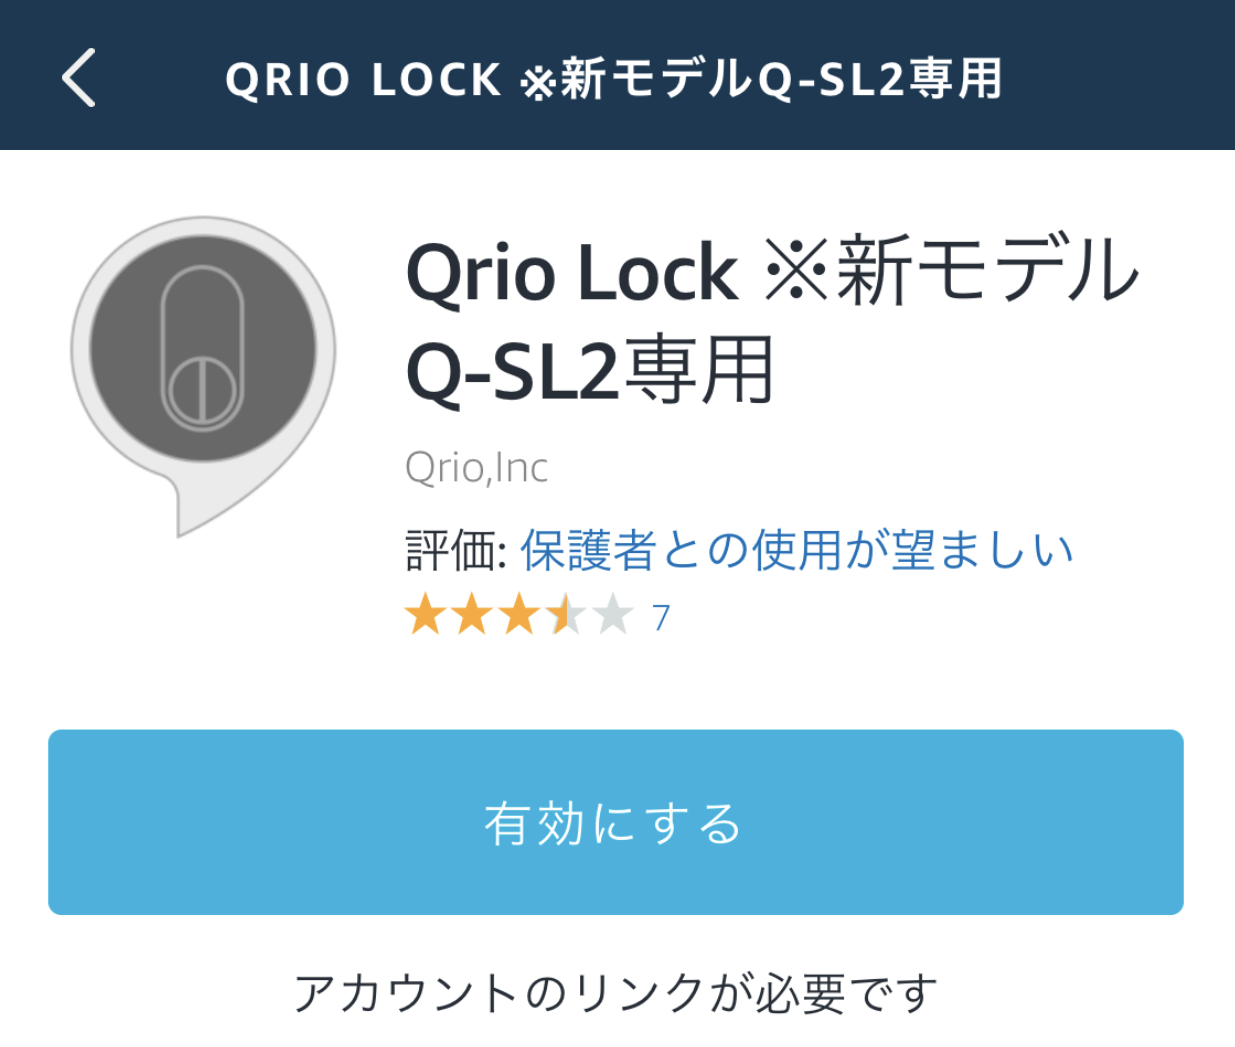 Qrio Lock Q Sl2 が Amazon Alexa に対応 アレクサ ドアの鍵をロックして が実現 覚醒する Cdip